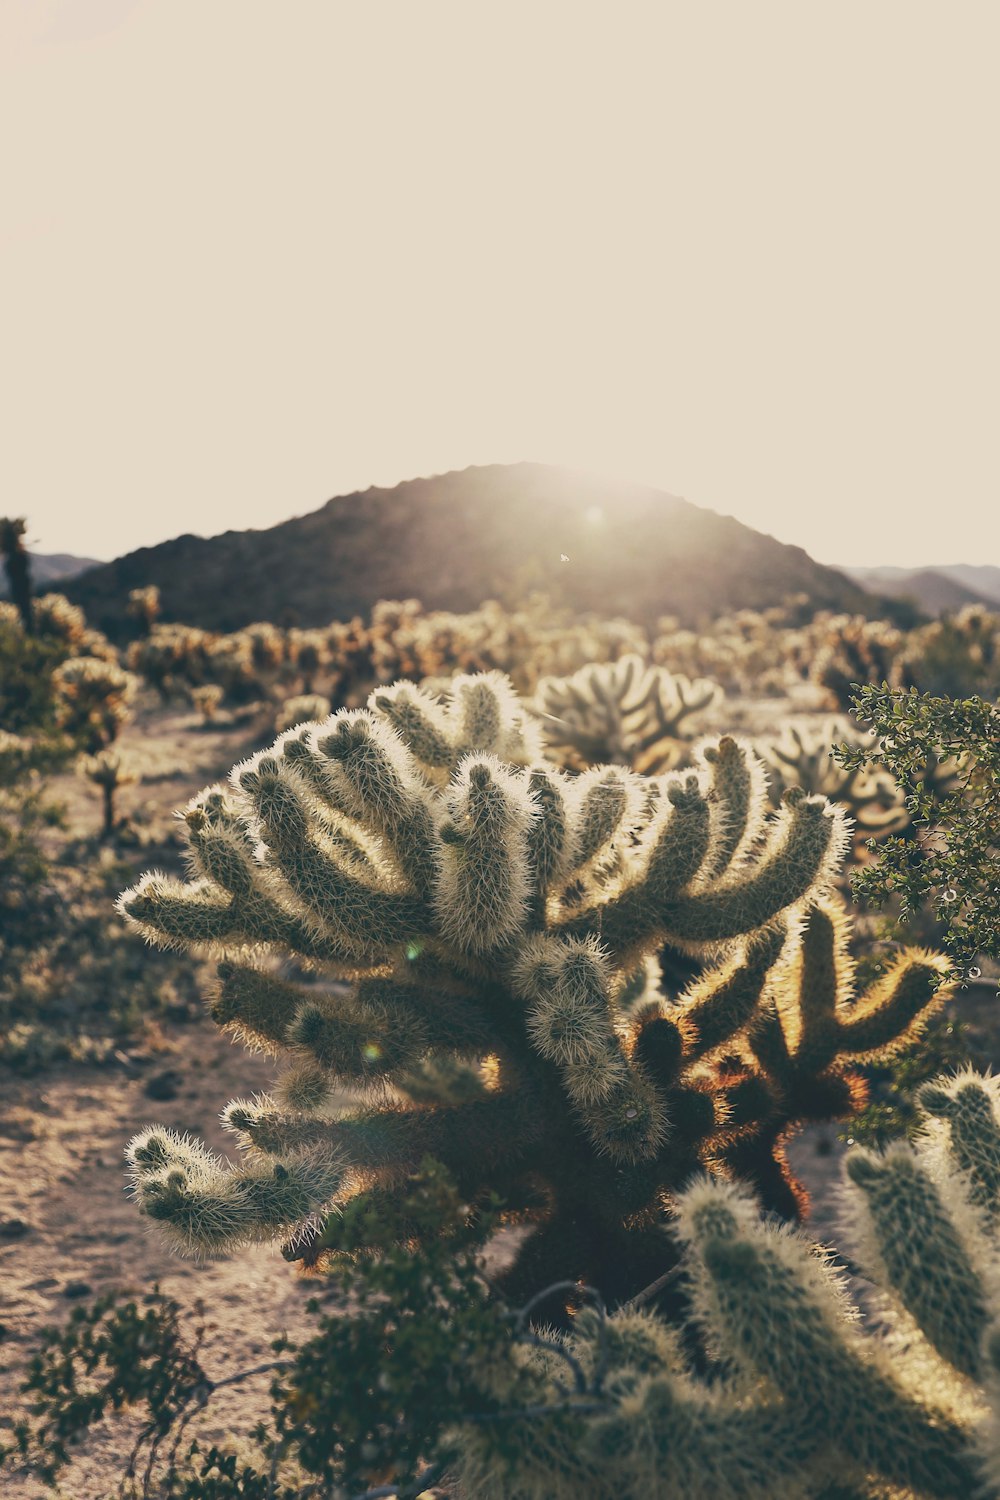 Planta de cactus verde